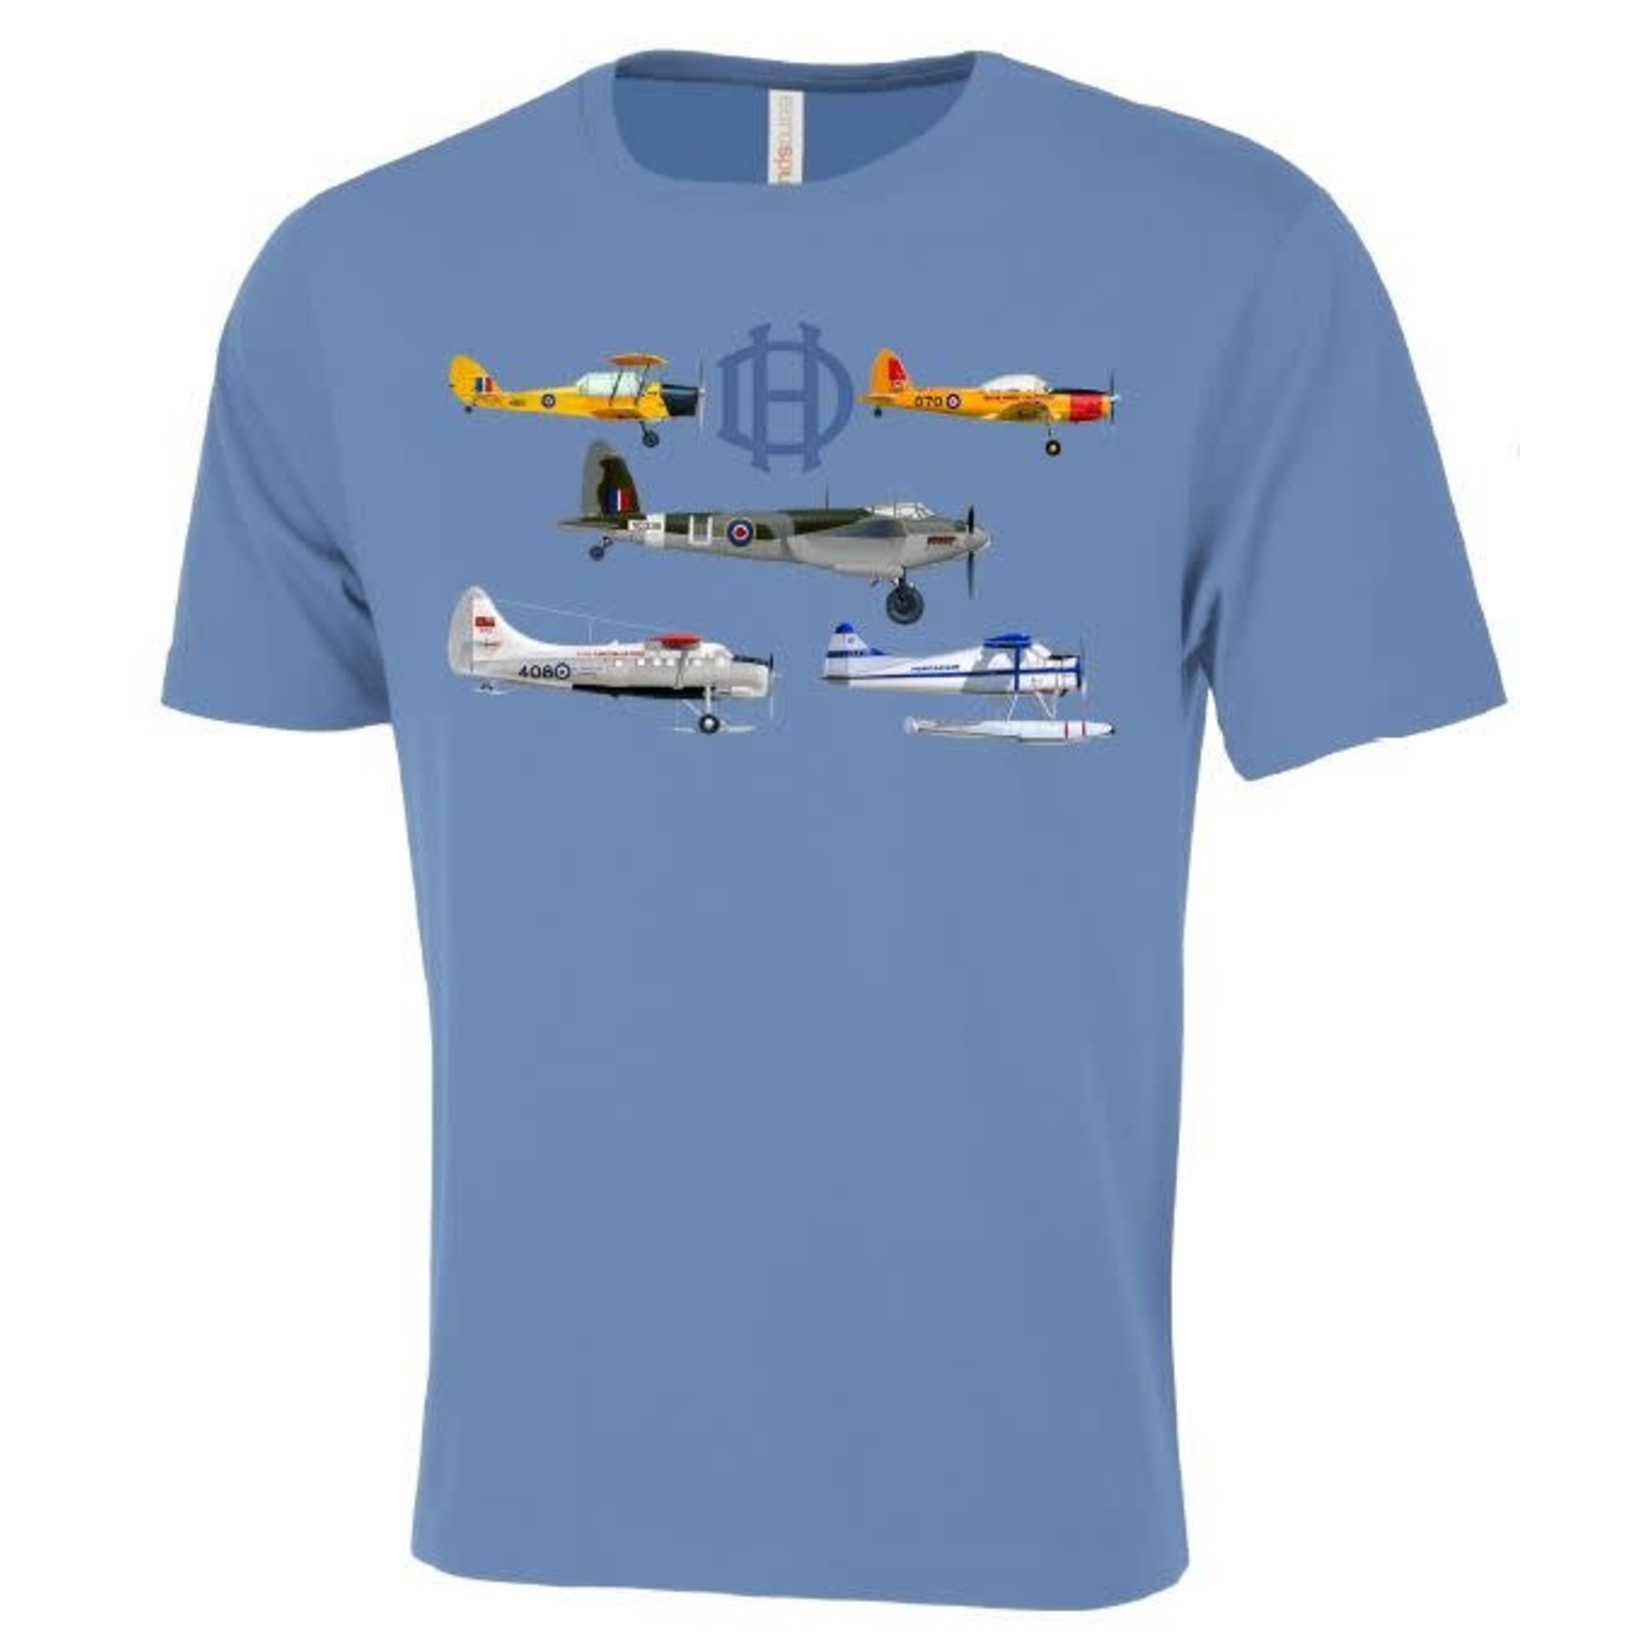 Aviation and Space T-Shirt De Havilland Montage pour hommes